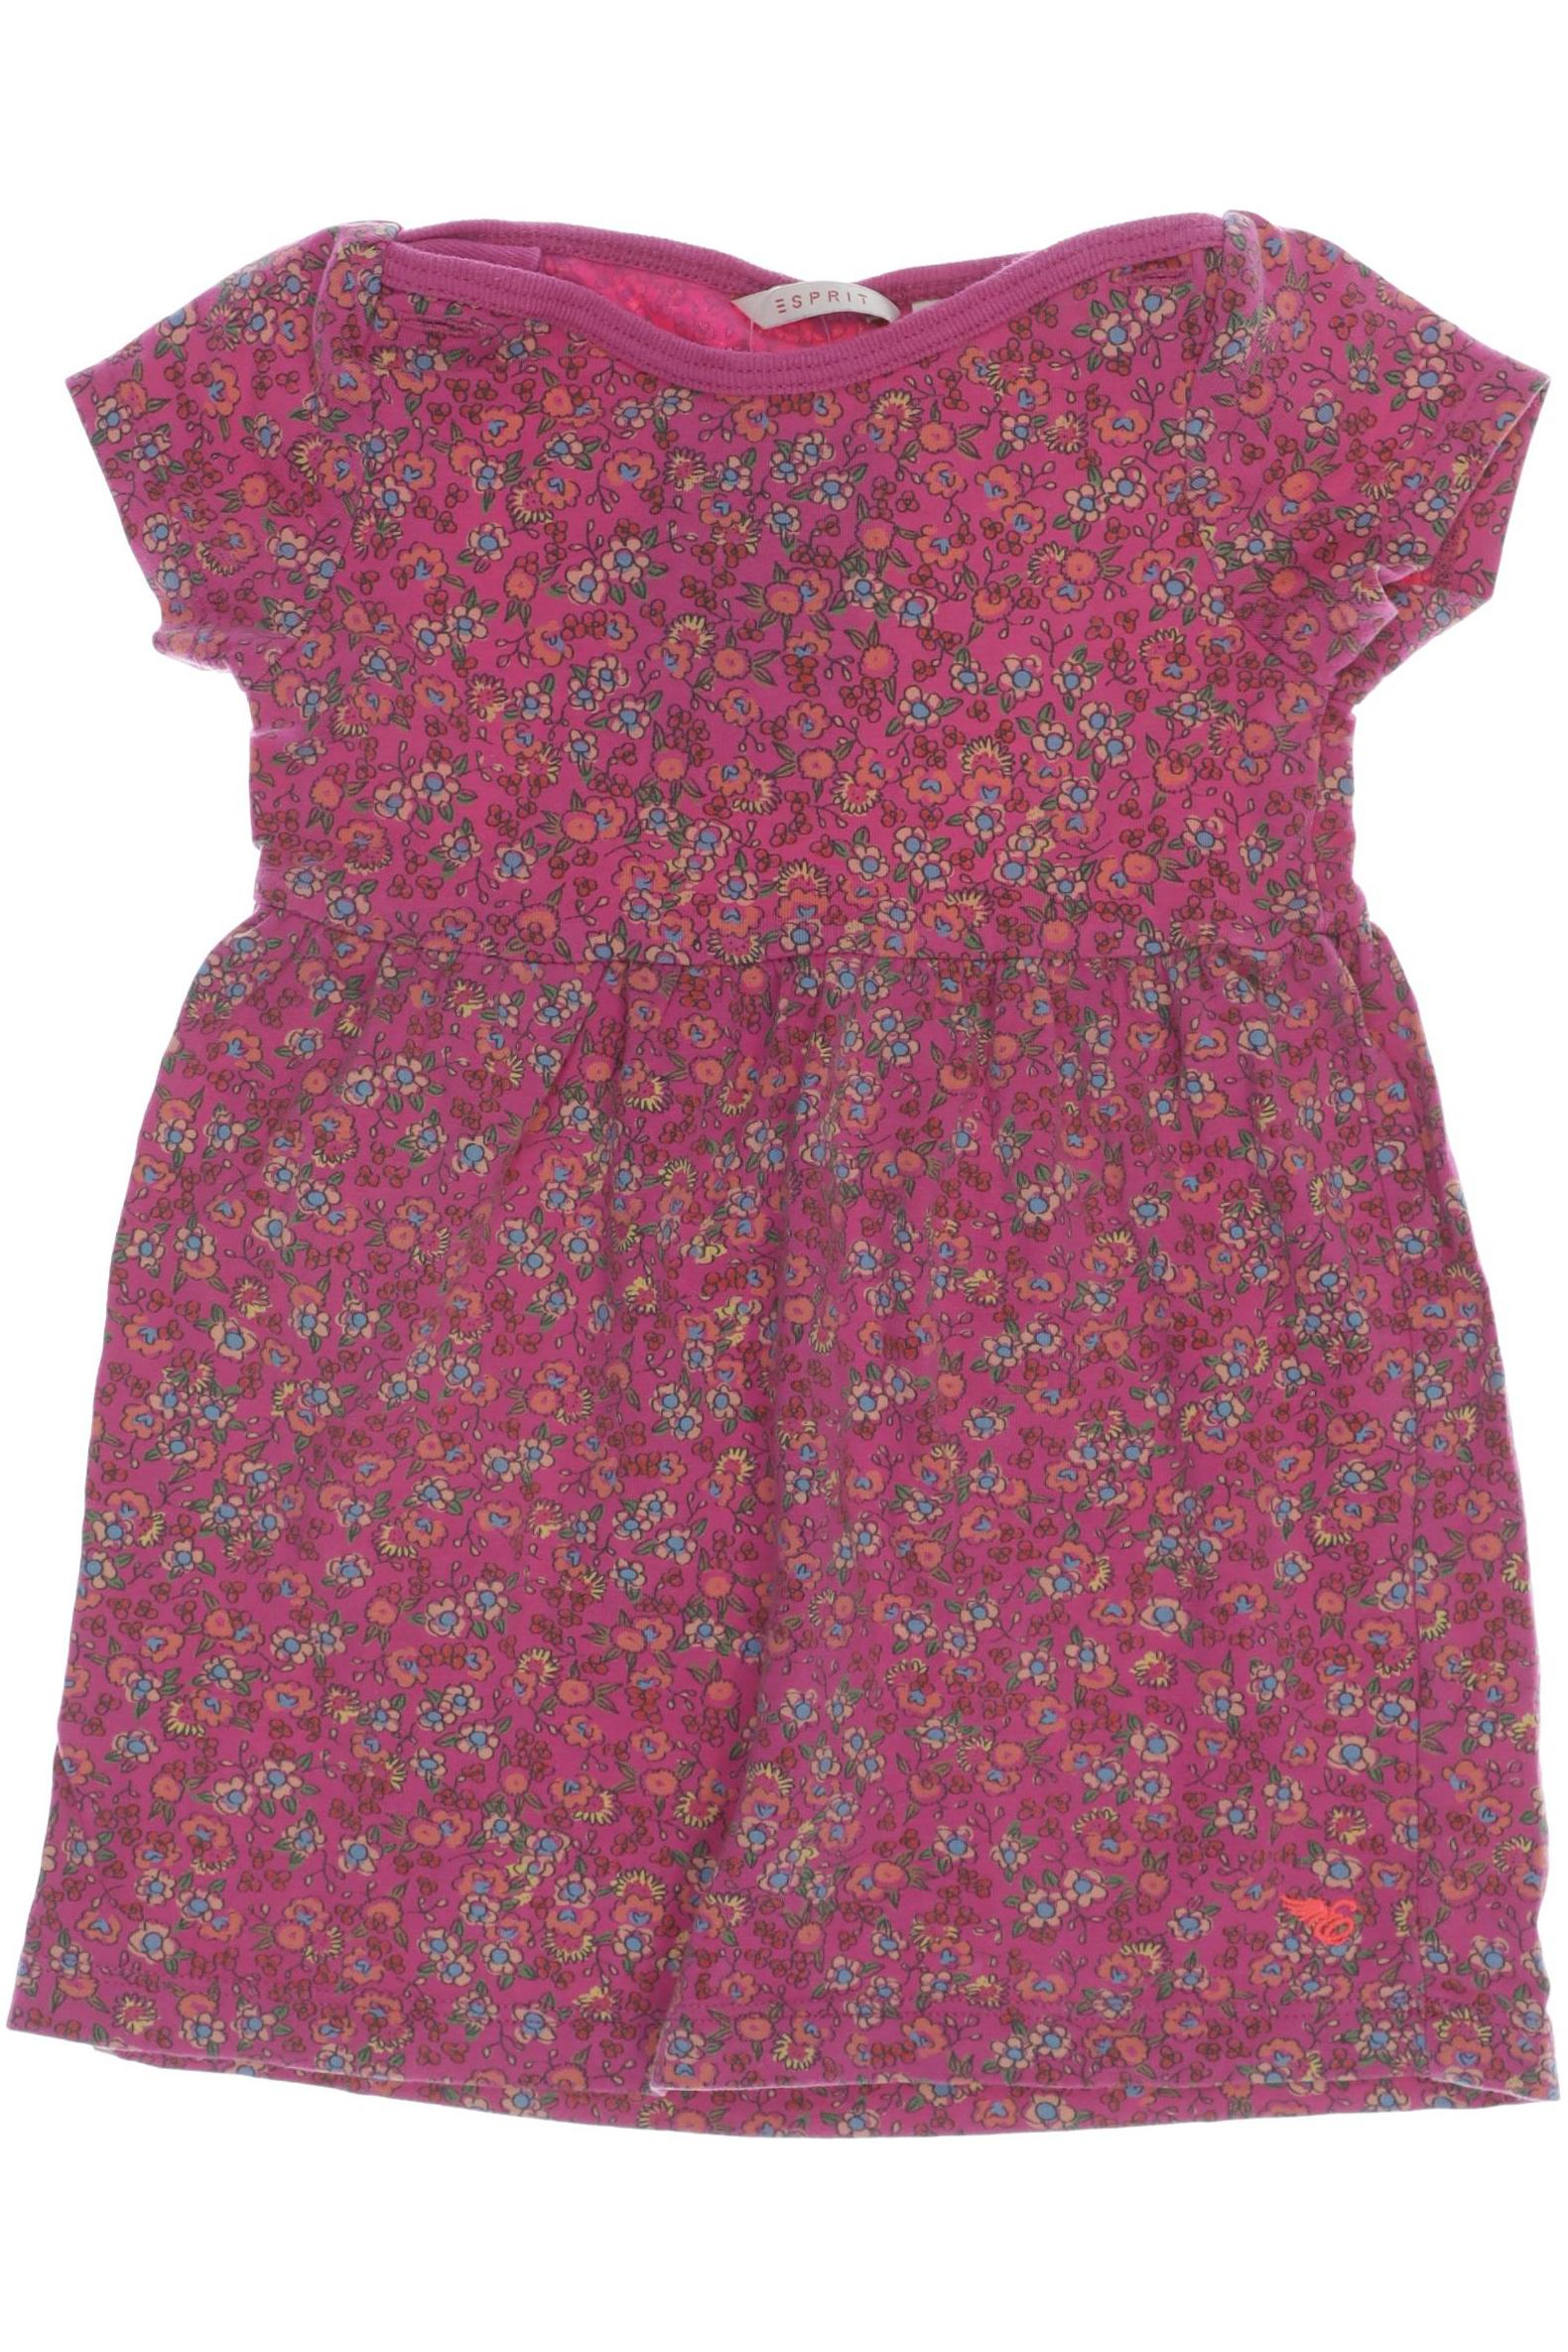 Esprit Damen Kleid, pink, Gr. 74 von Esprit